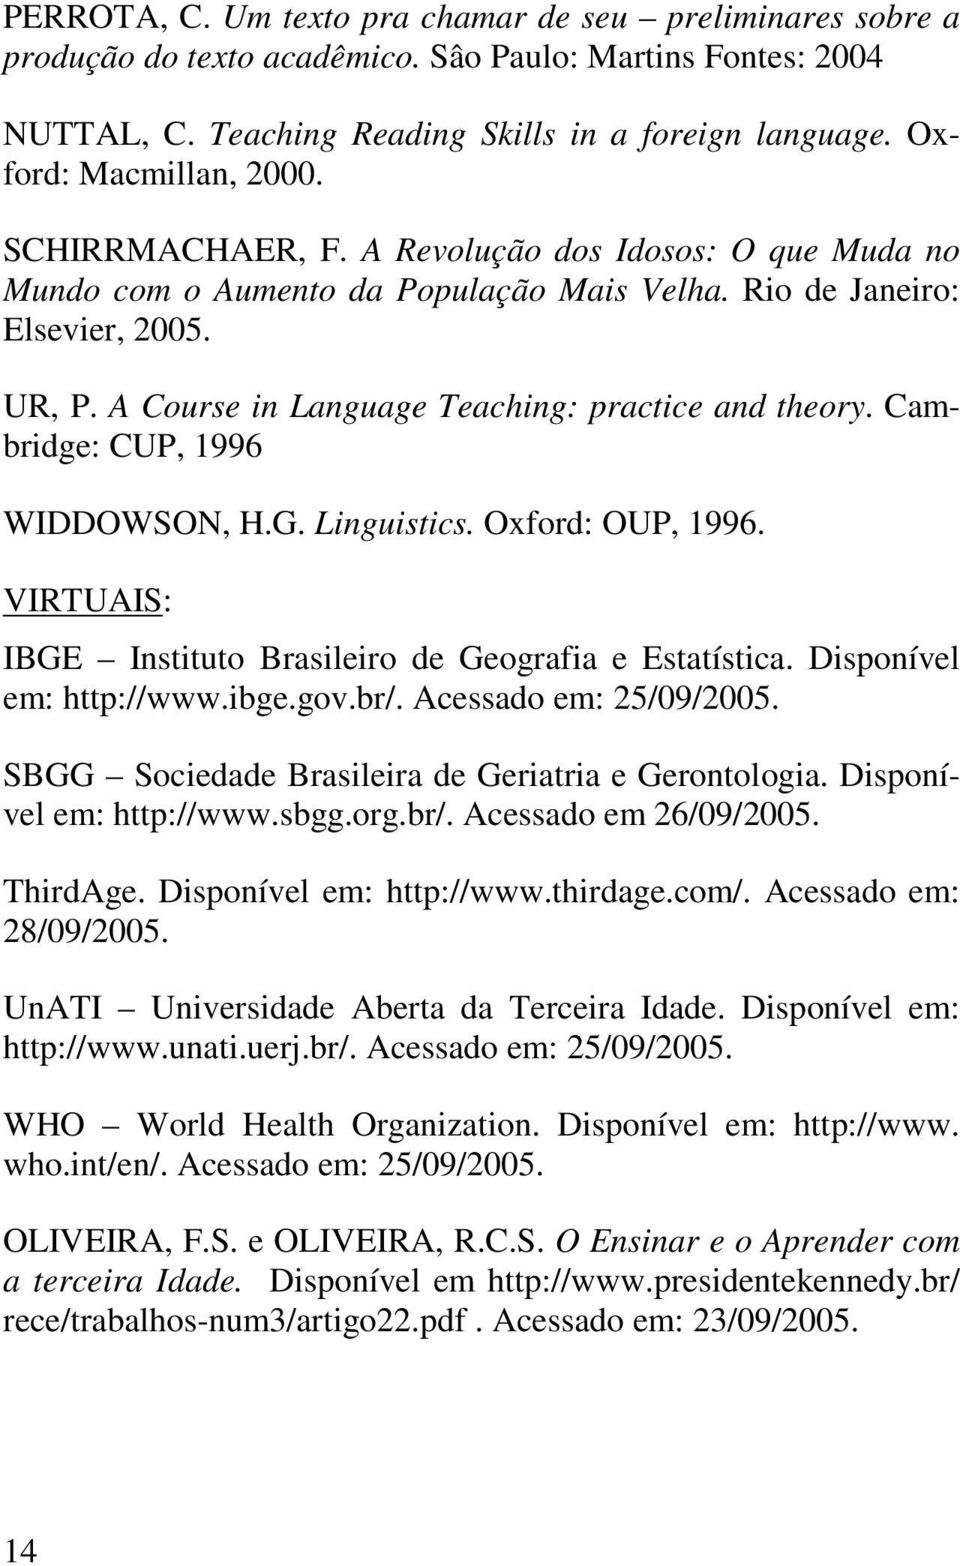 A Course in Language Teaching: practice and theory. Cambridge: CUP, 1996 WIDDOWSON, H.G. Linguistics. Oxford: OUP, 1996. VIRTUAIS: IBGE Instituto Brasileiro de Geografia e Estatística.